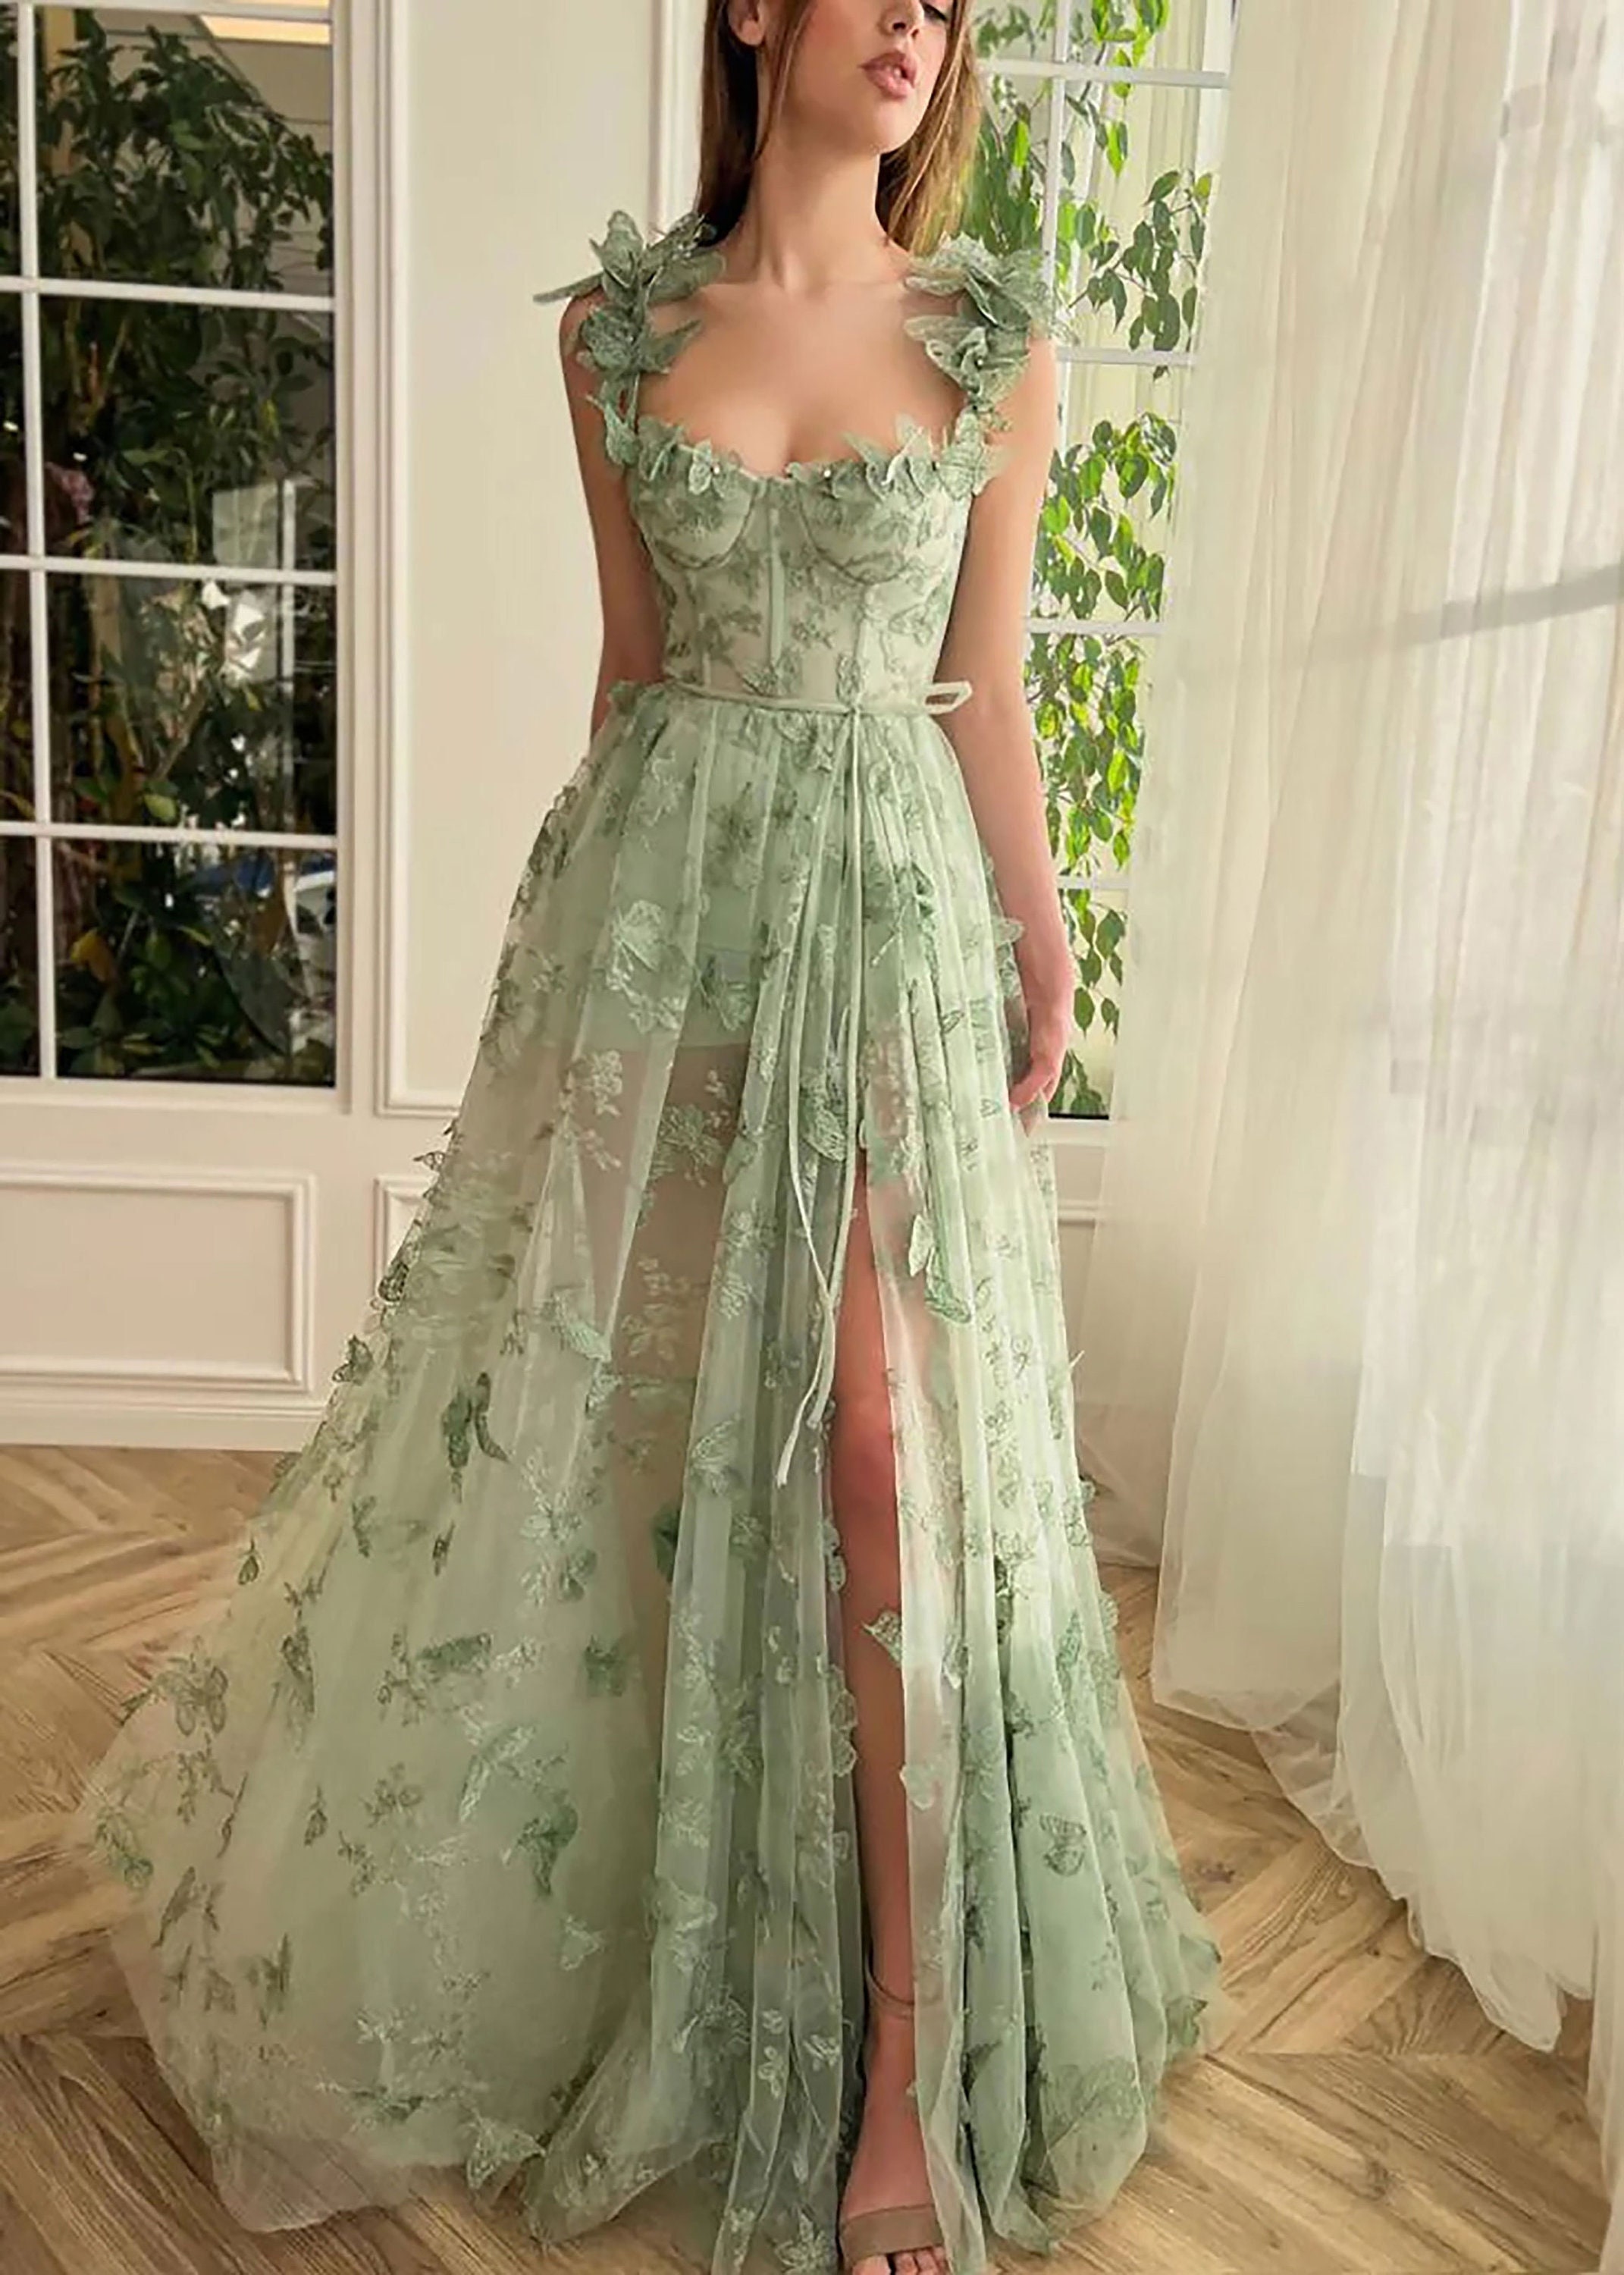 Lace Wedding Dresslight Green Butterfly Gown Etsy